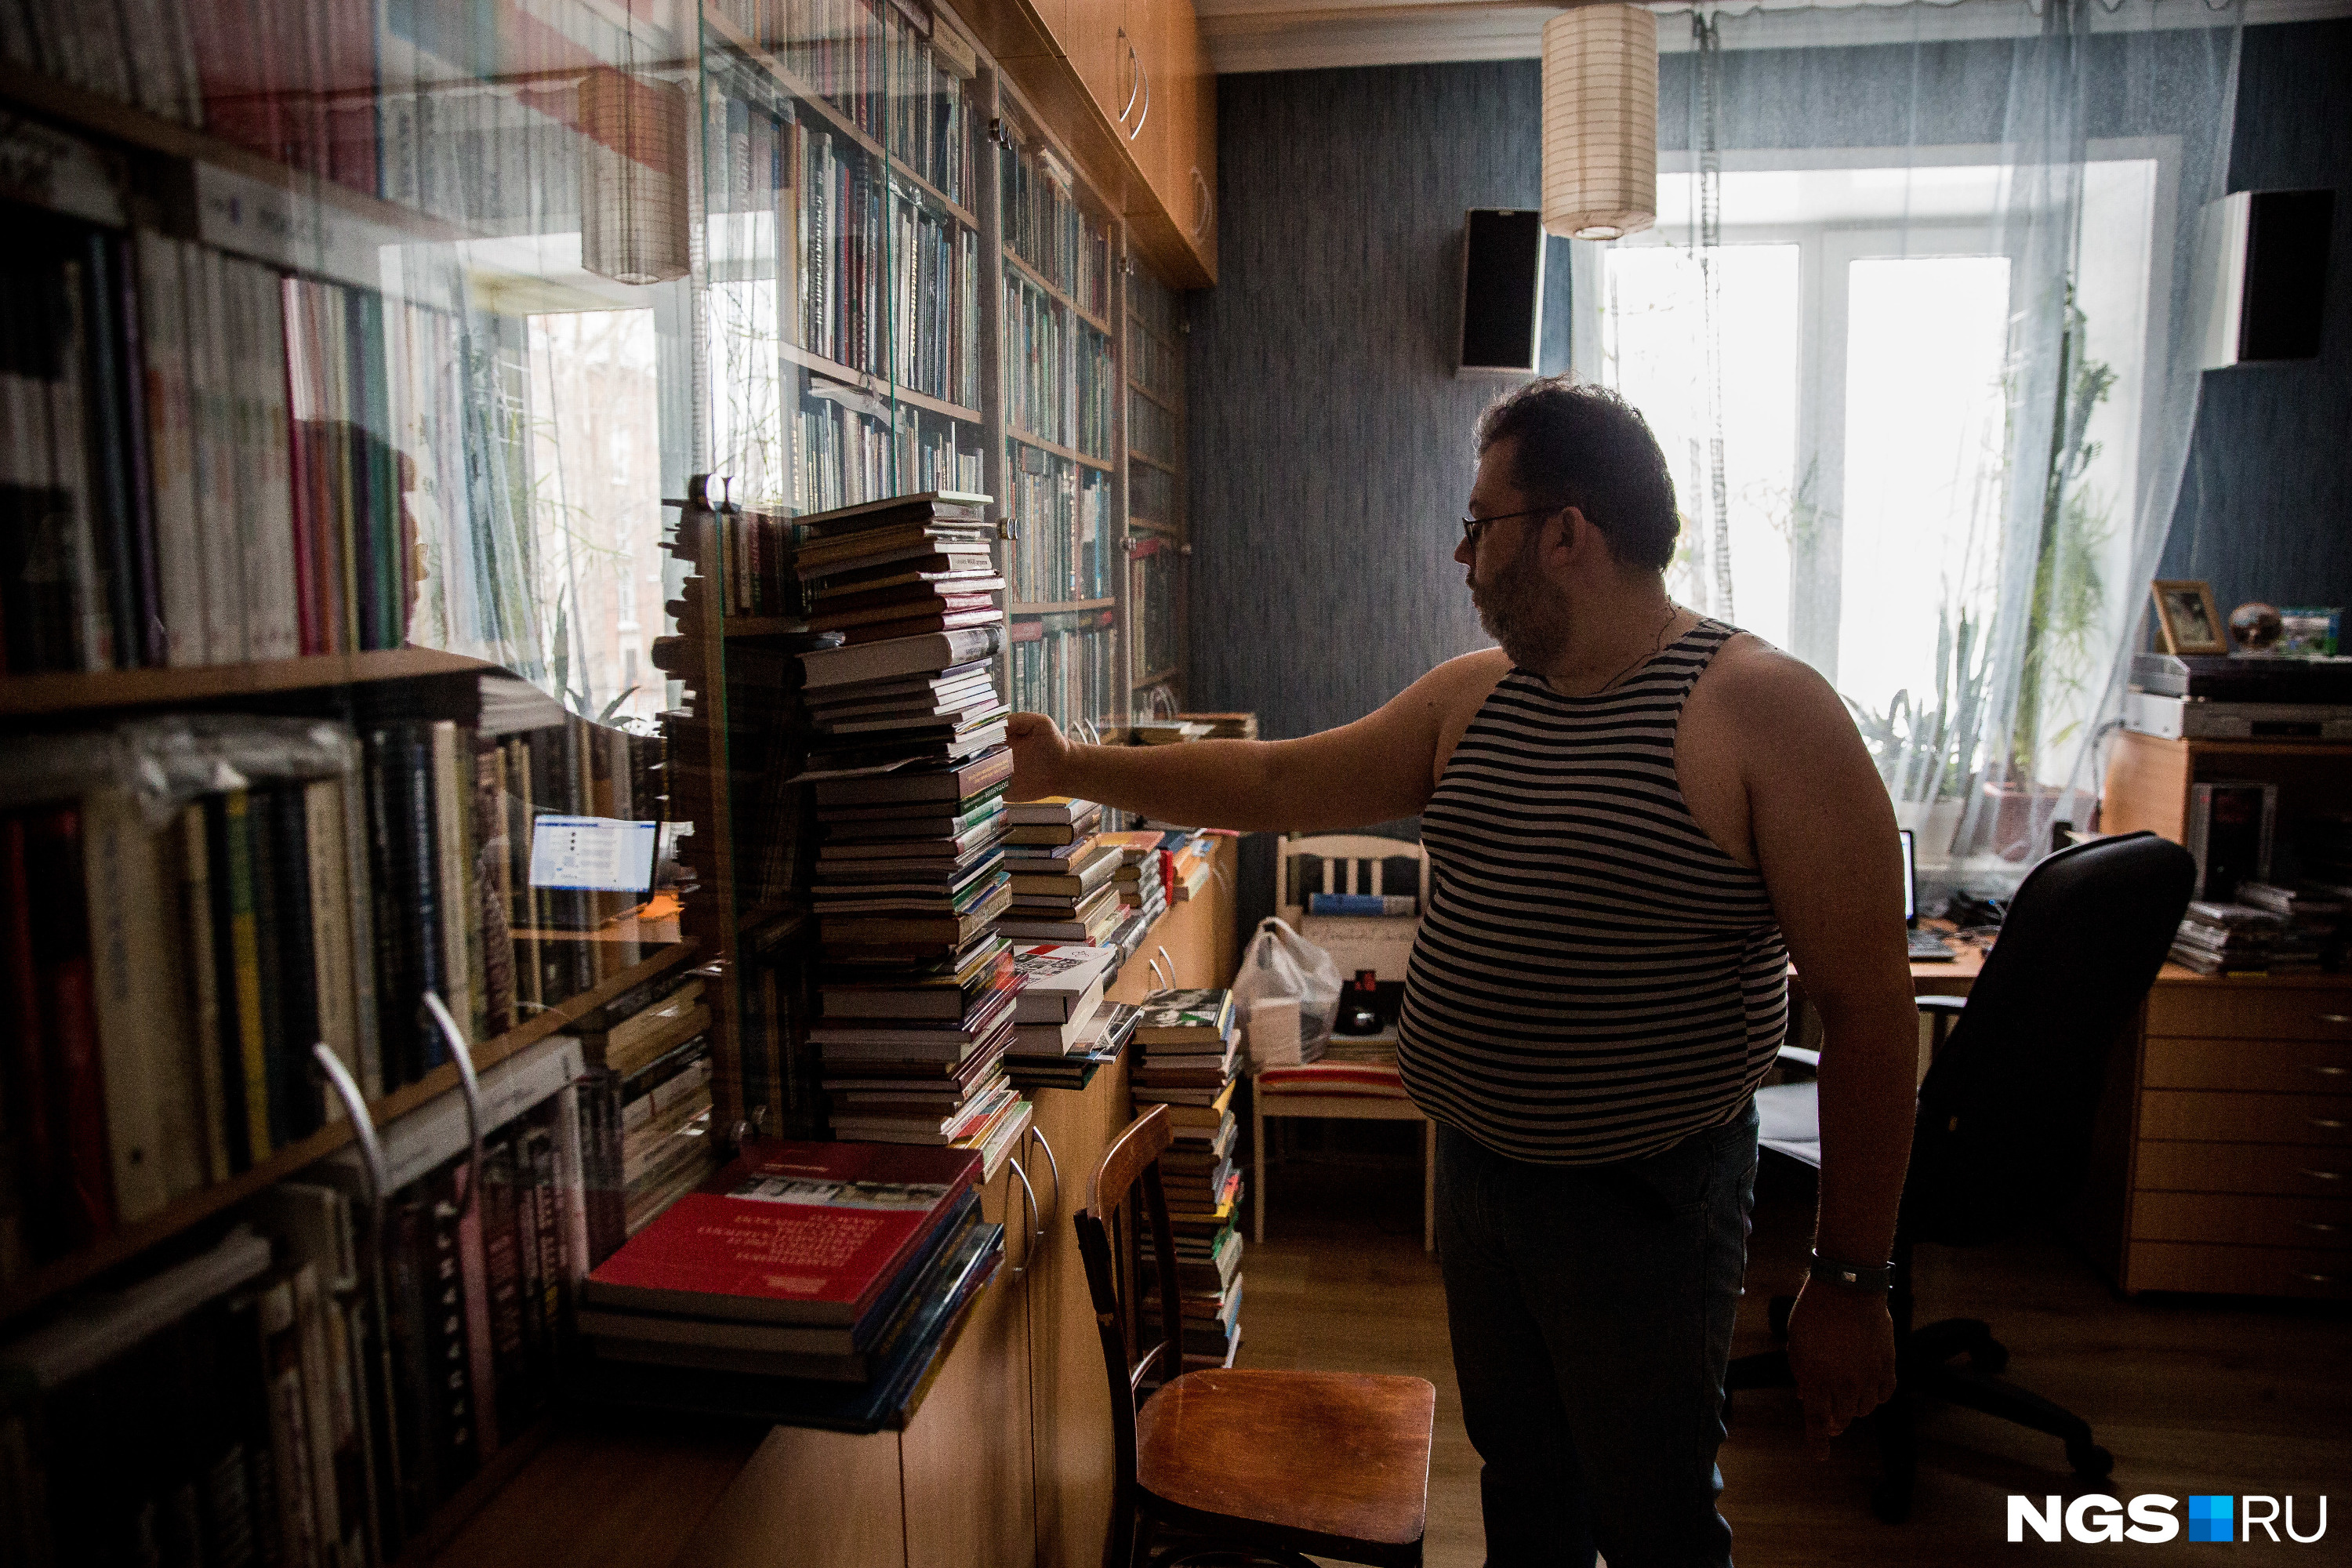 Сейчас его библиотека насчитывает порядка 7 тысяч книг